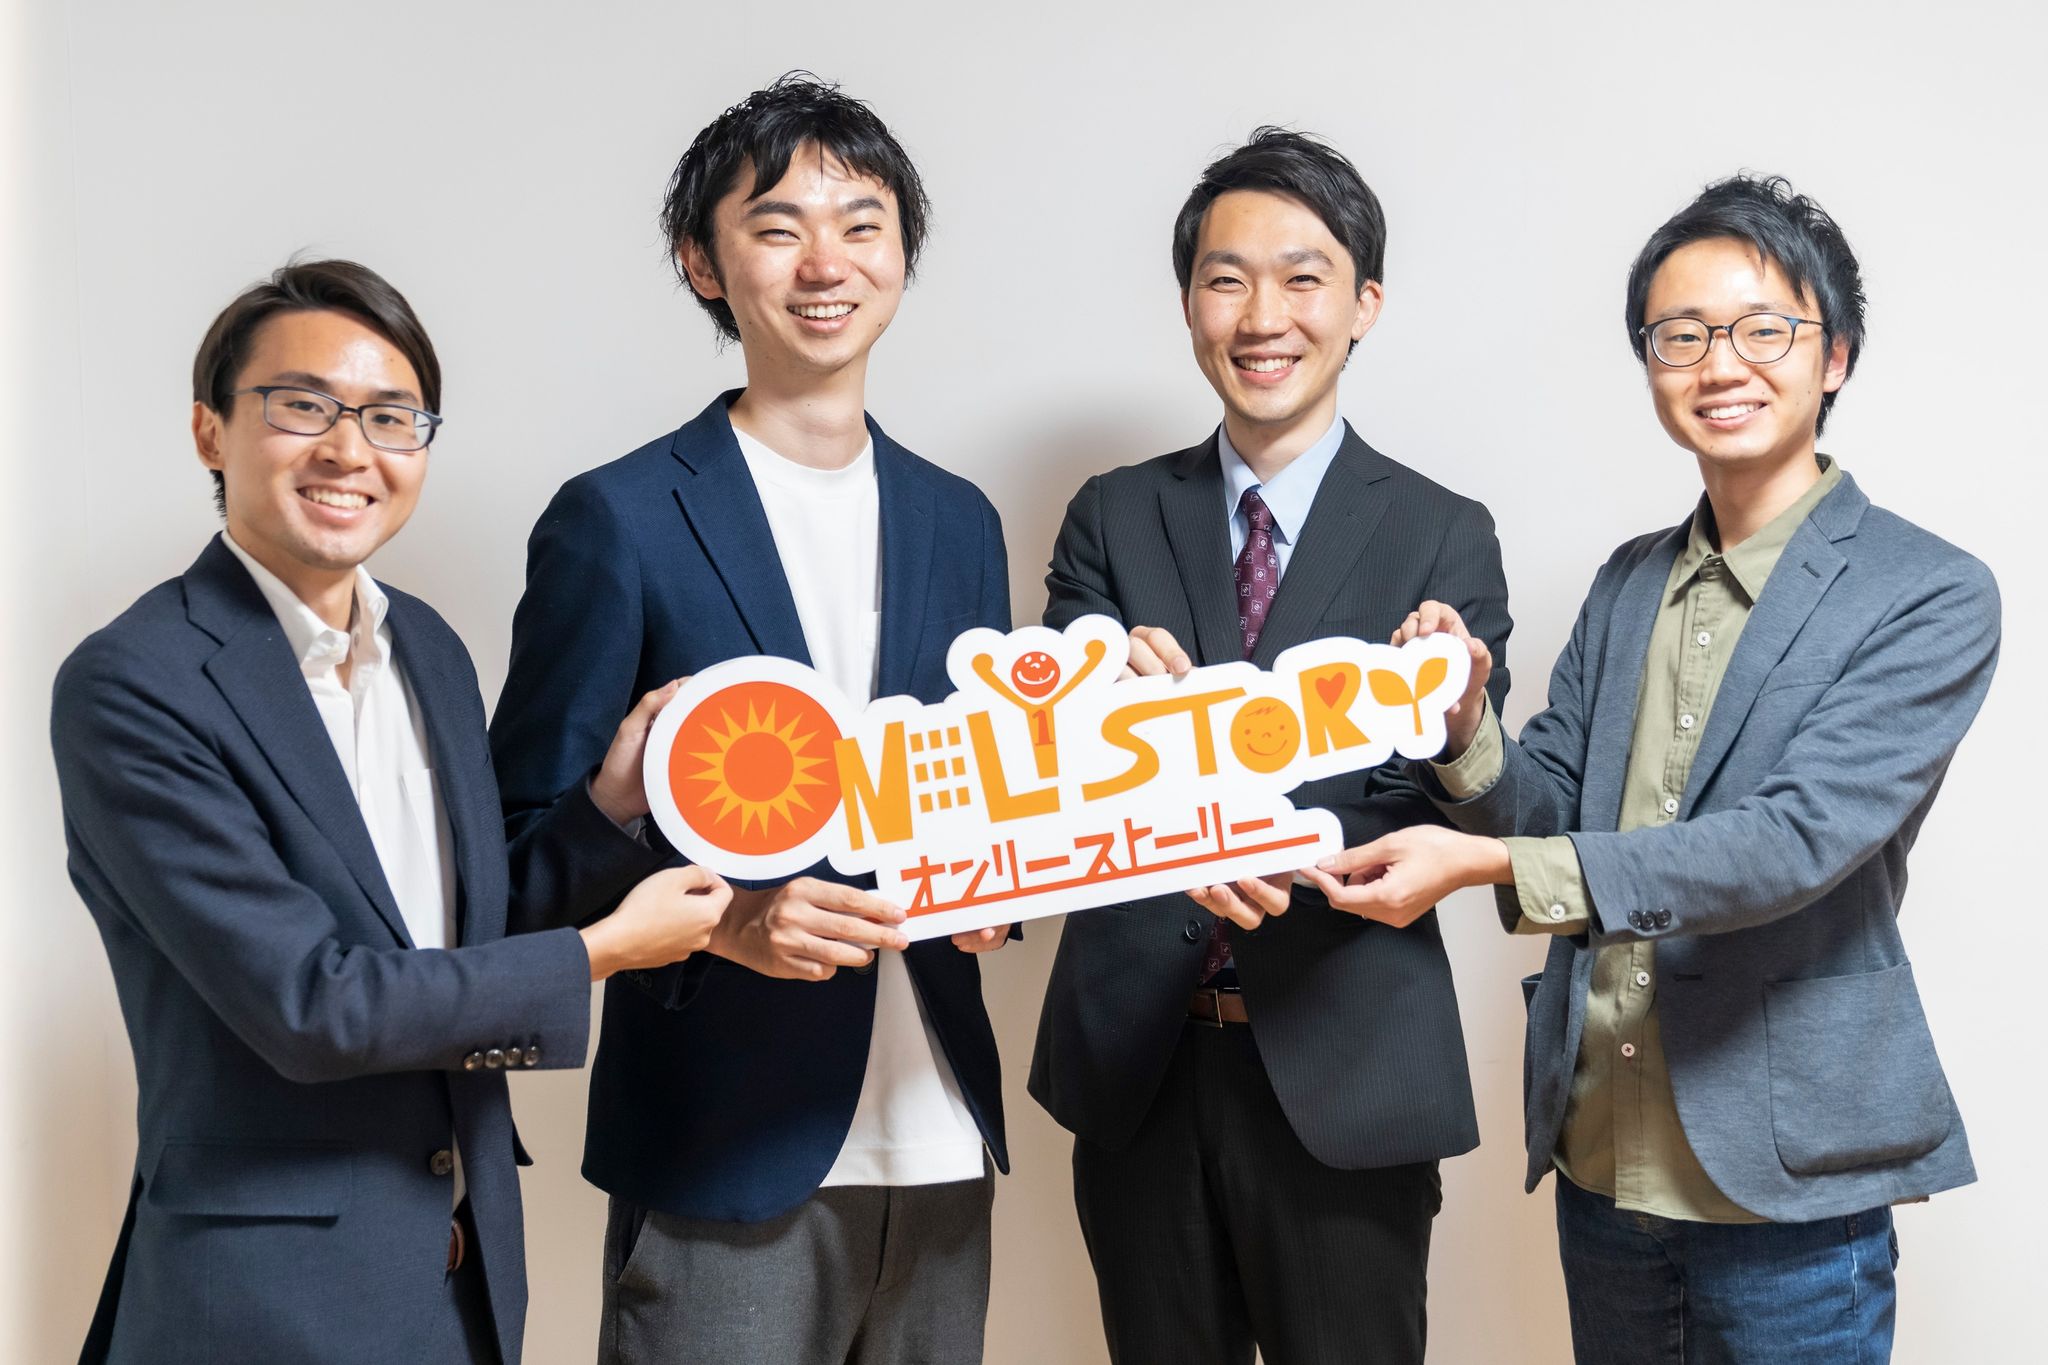 決裁者マッチング支援SaaS「ONLY STORY」を運営するオンリーストーリーのメンバー。左から2人目が代表取締役の平野哲也氏